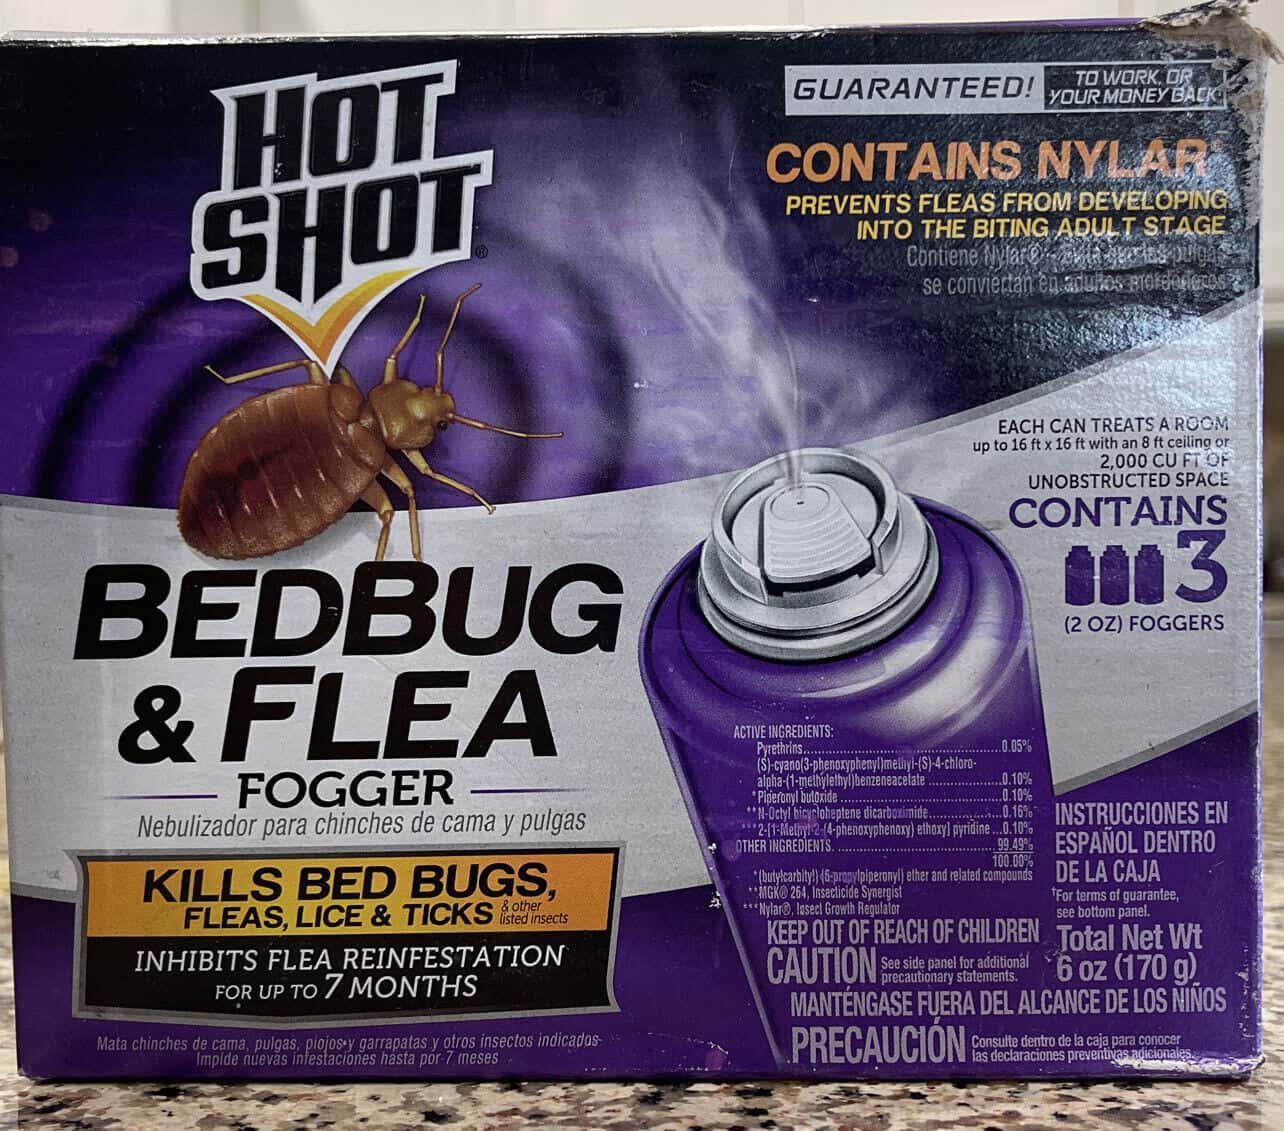 Consider a flea bomb